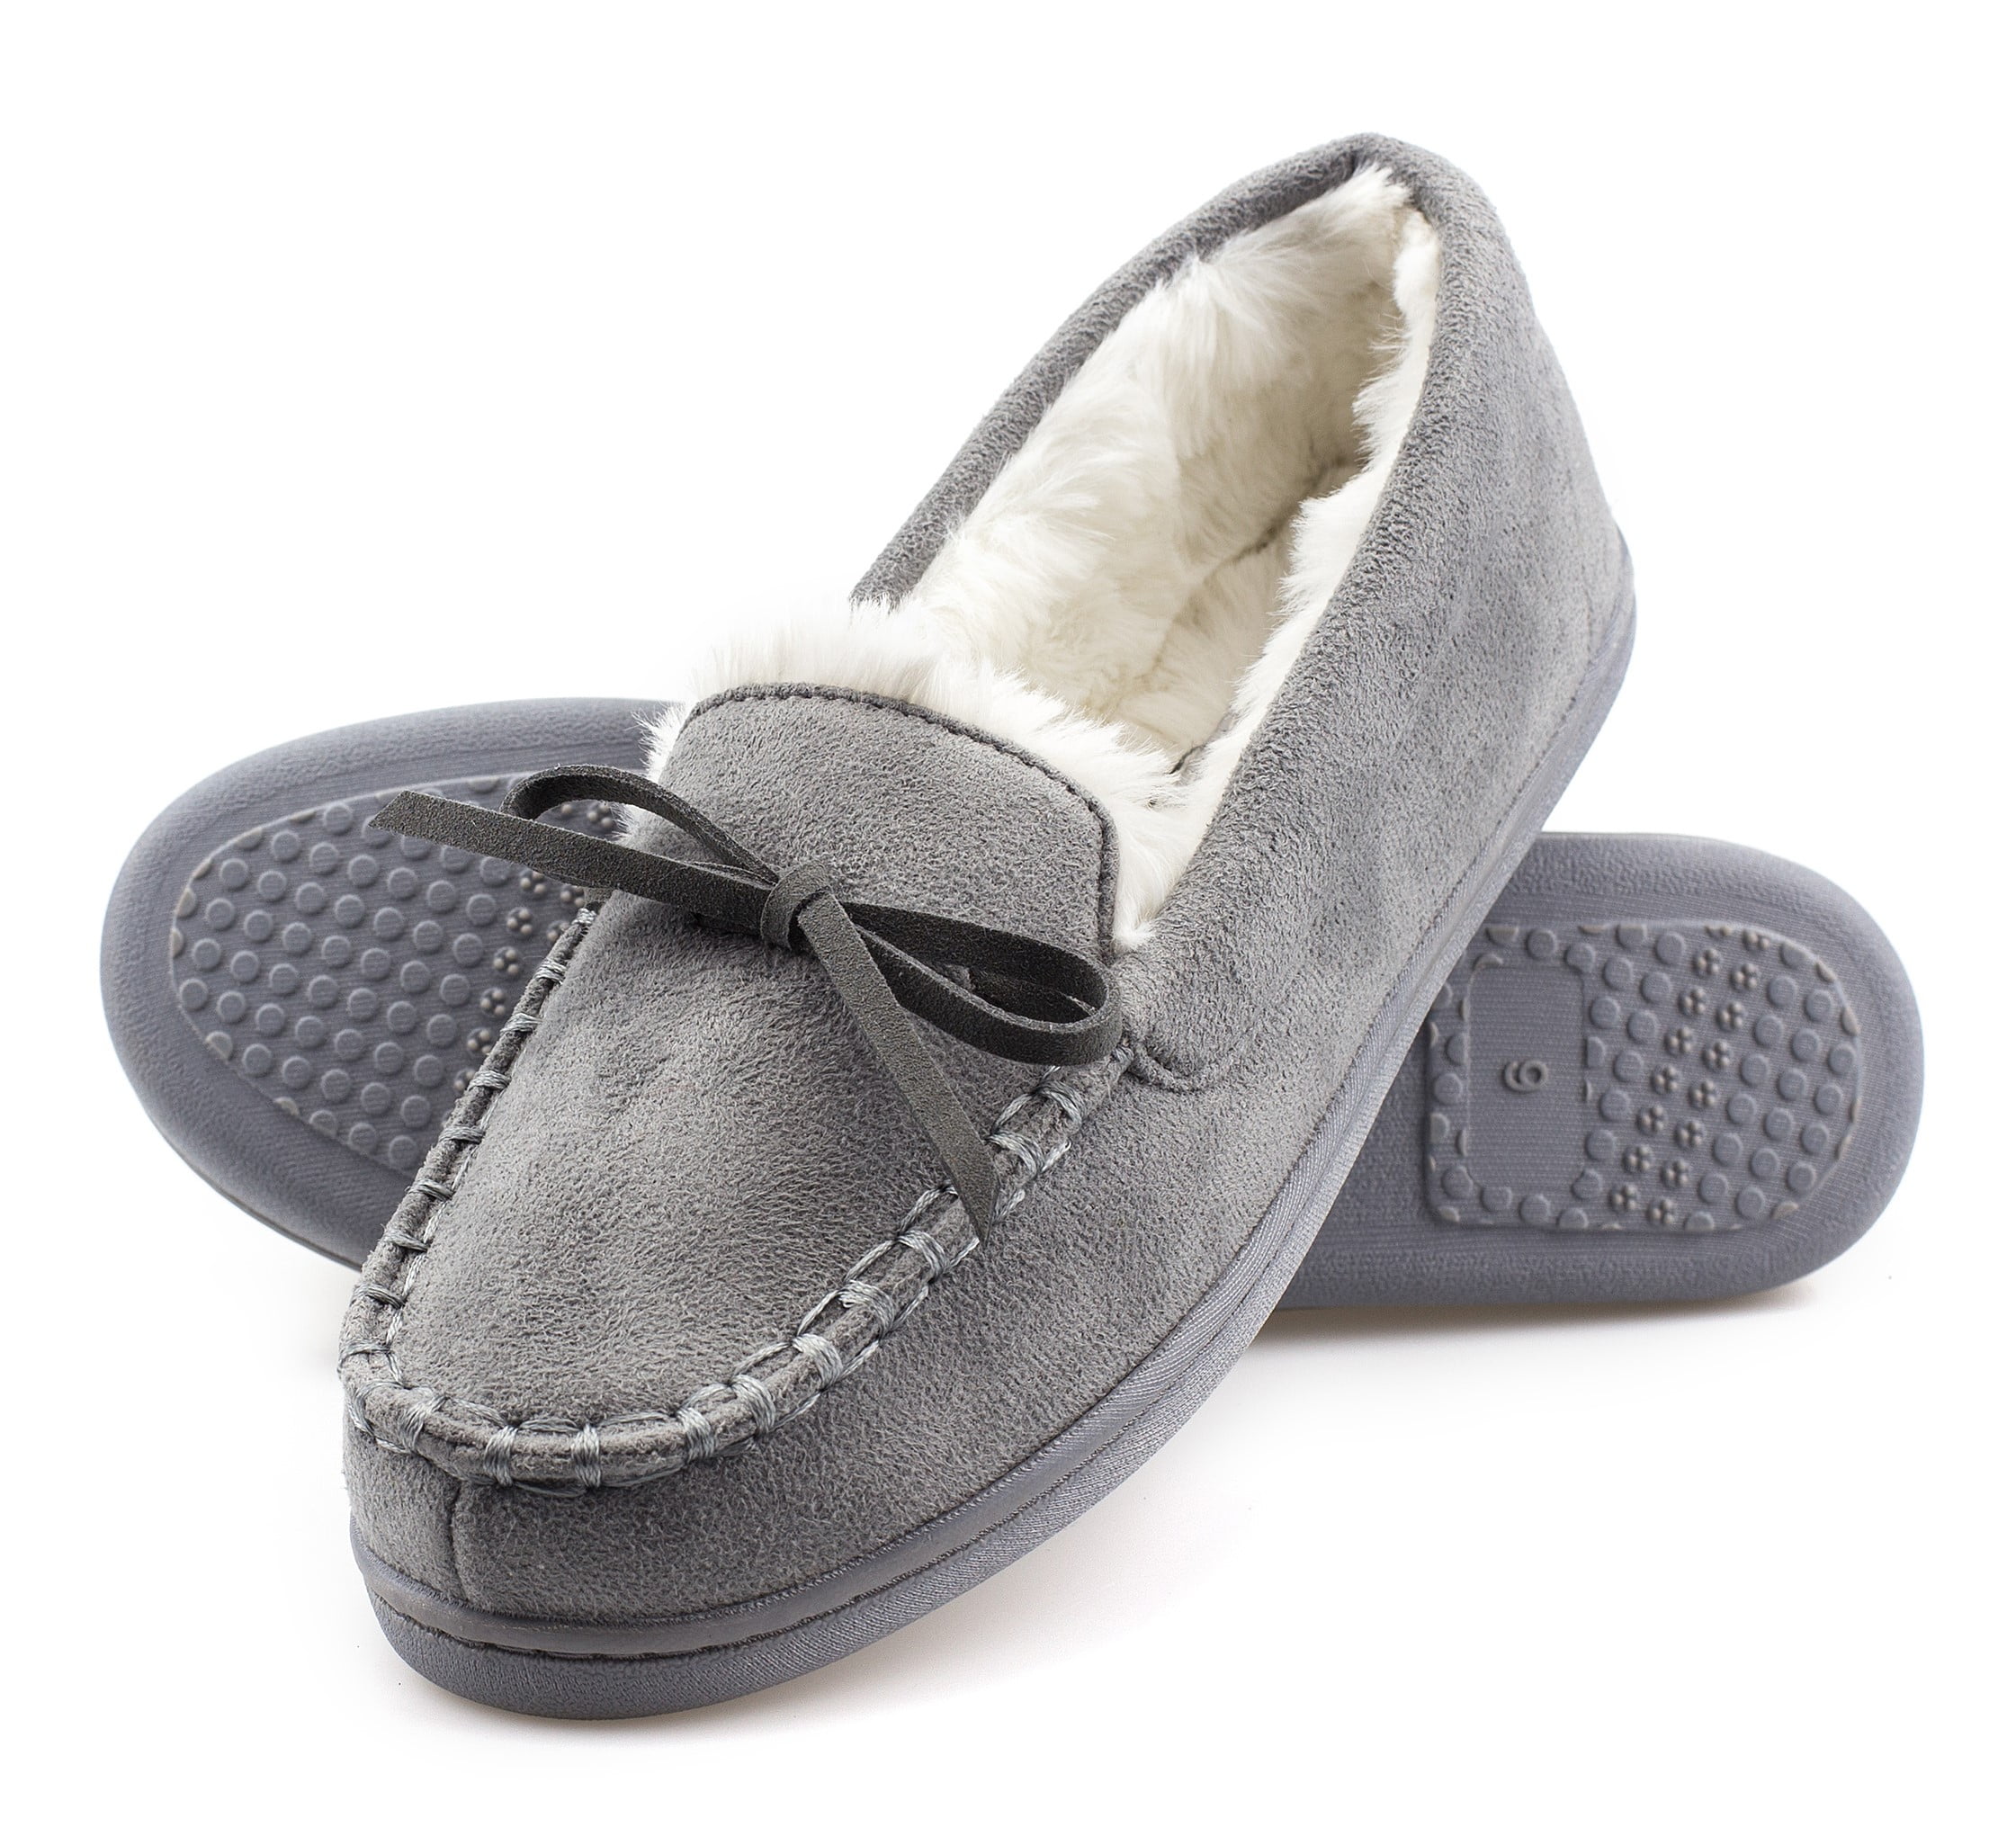 ArcticShield Women's Memory Foam Indoor/Outdoor Durable Comfort Slip On Plush Fur Moccasin Slippers